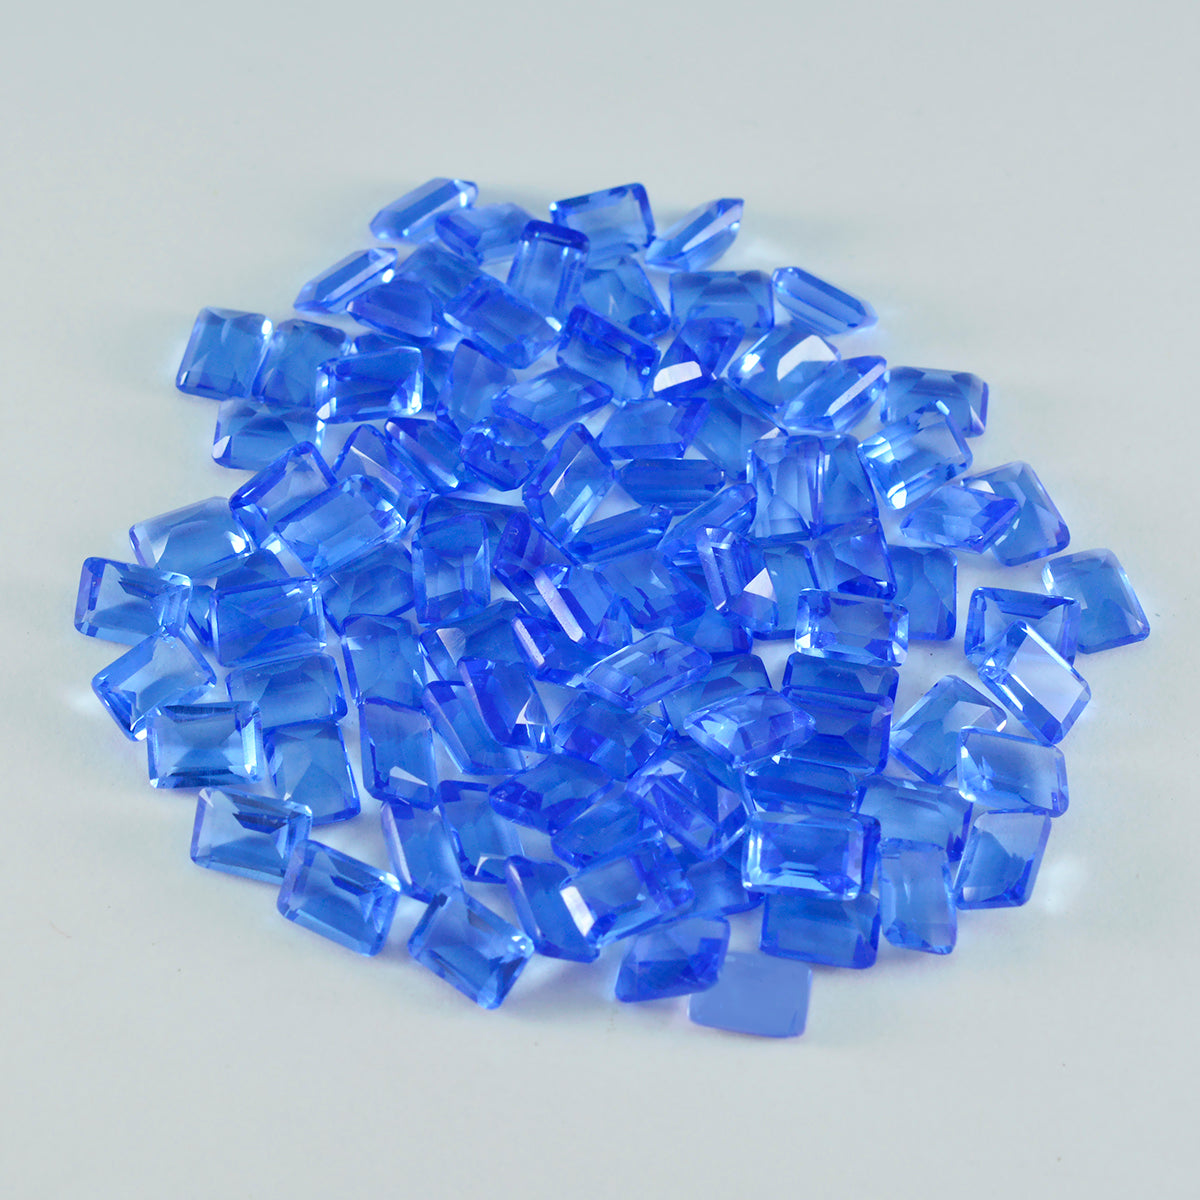 riyogems 1 шт. синий сапфир cz ограненный 3x5 мм восьмиугольной формы, красивые качественные драгоценные камни